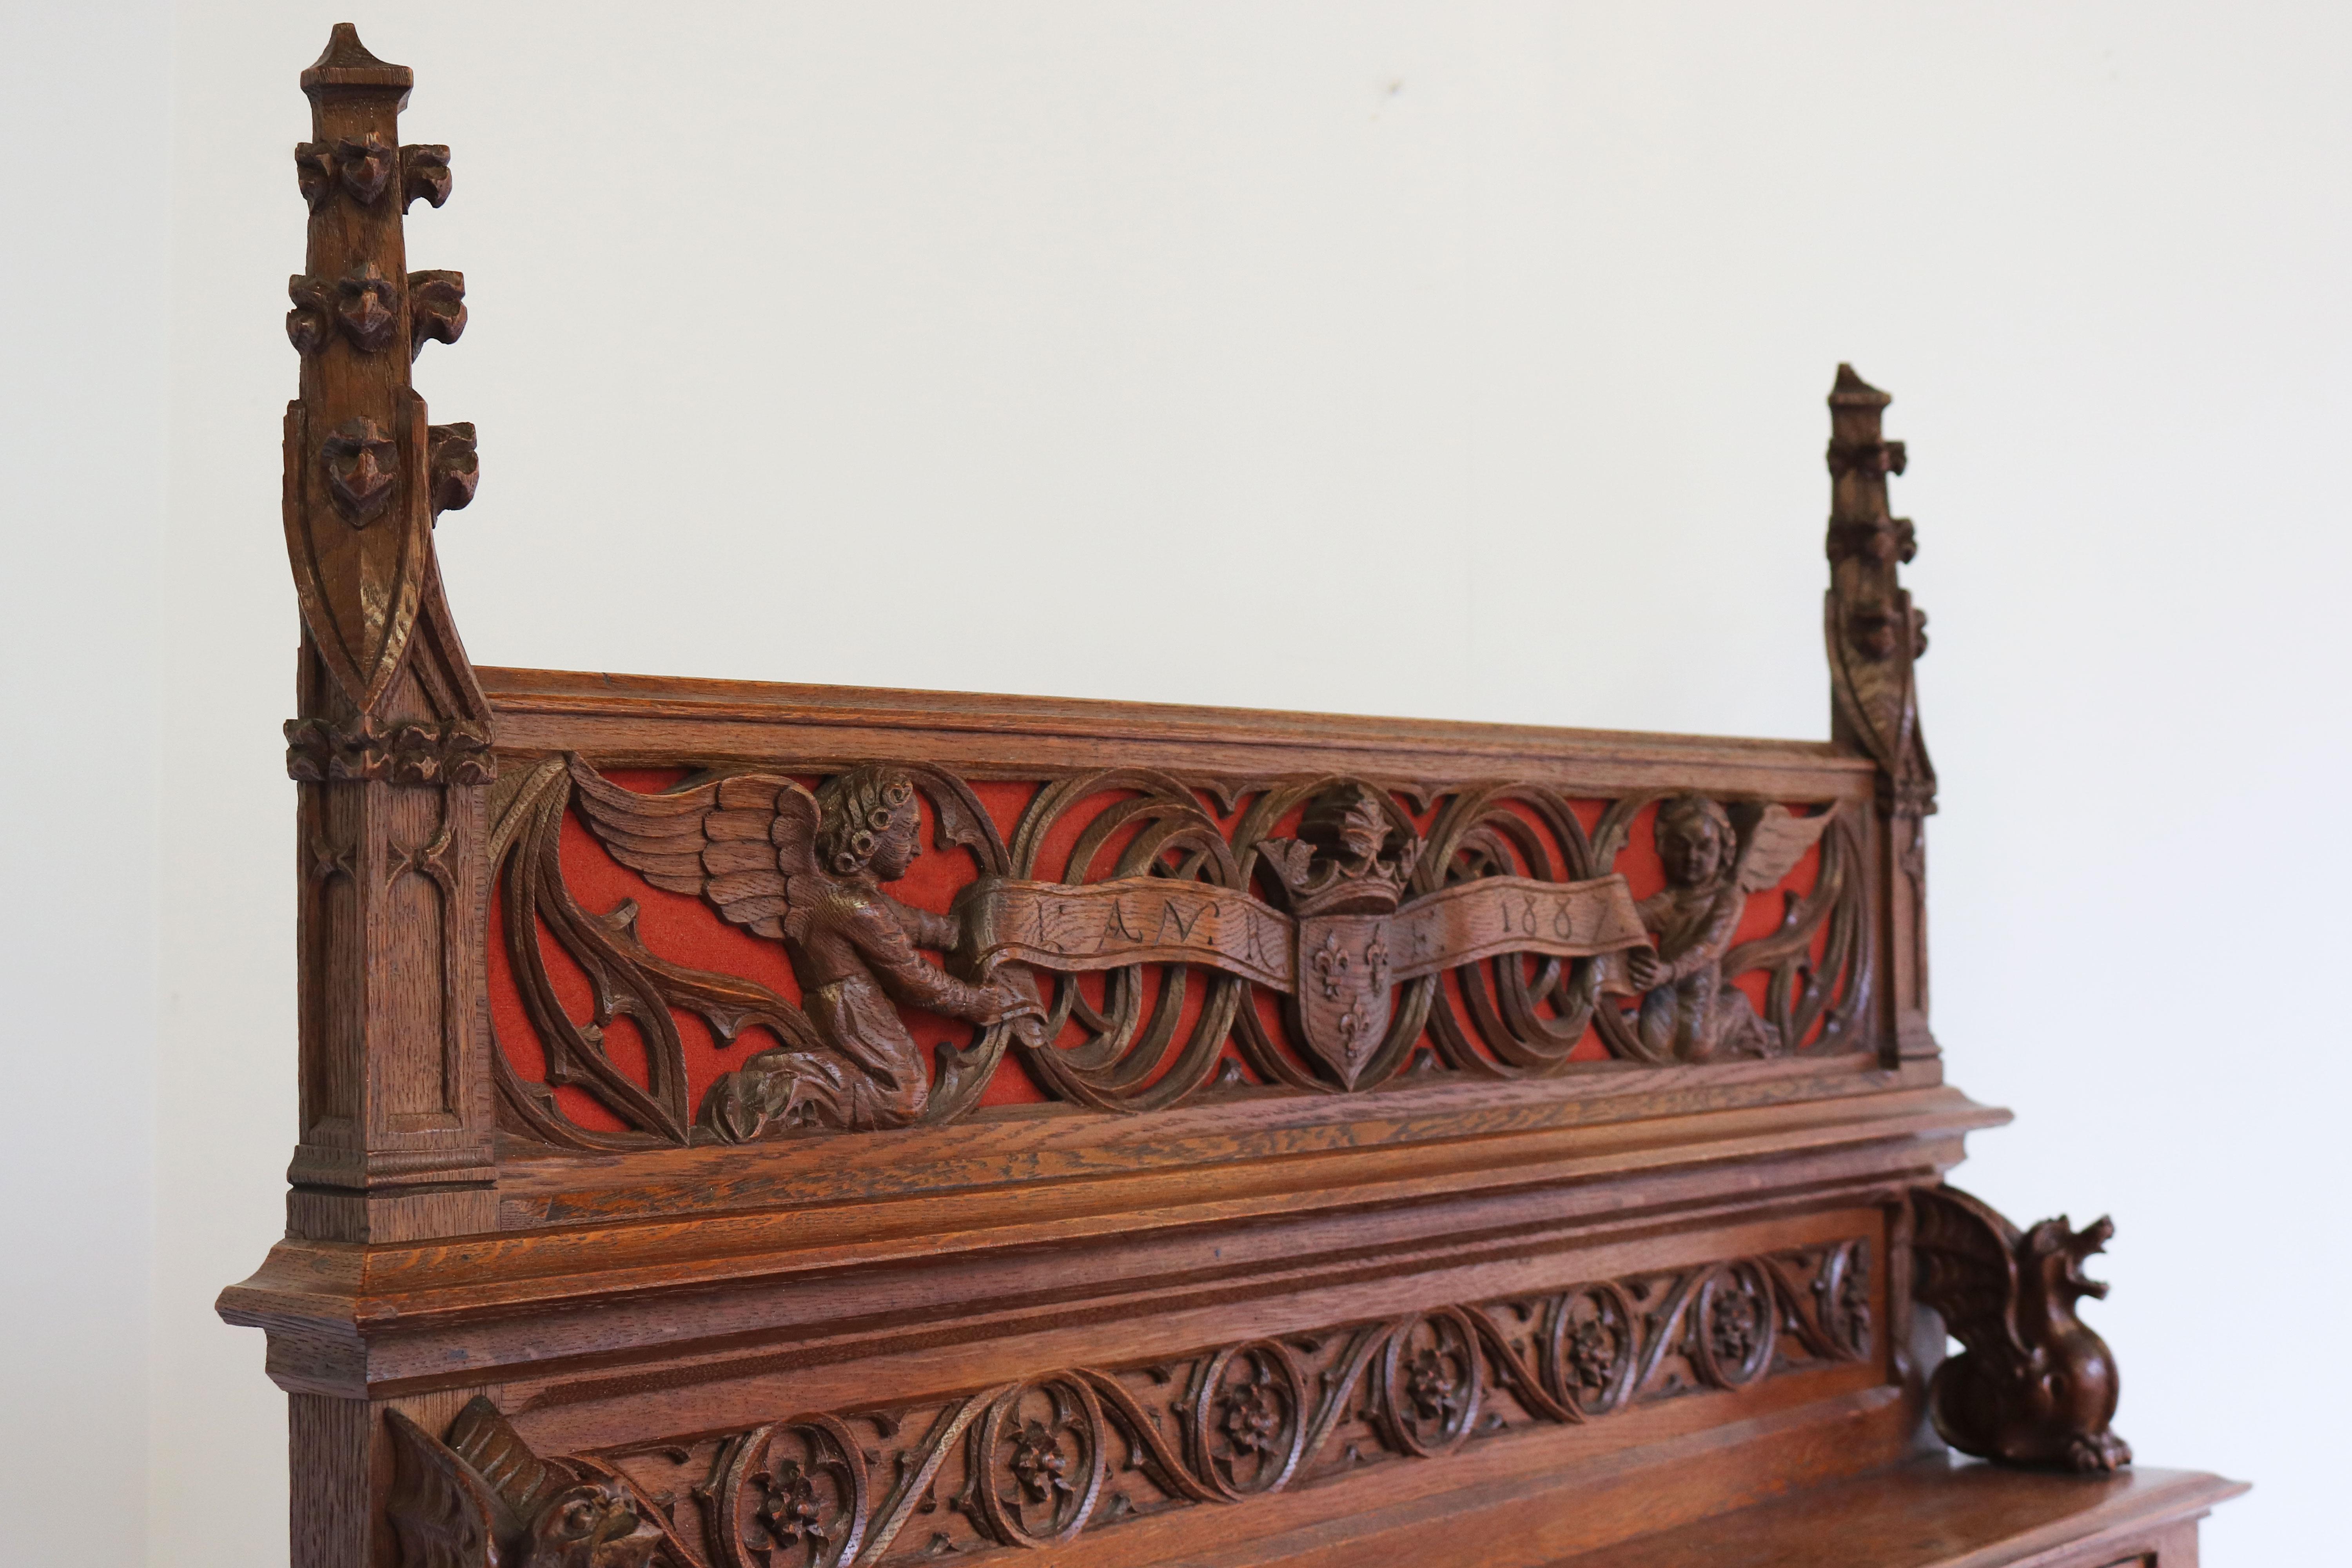 Außergewöhnlich und atemberaubend! Diese sehr hohe Qualität Gothic Revival Schreibtisch / Sekretär markiert 1887. 
Geschnitzt aus europäischer Eiche mit hervorragender Handwerkskunst und zahlreichen Details ! 
Die 2 Türen sind mit Engeln verziert